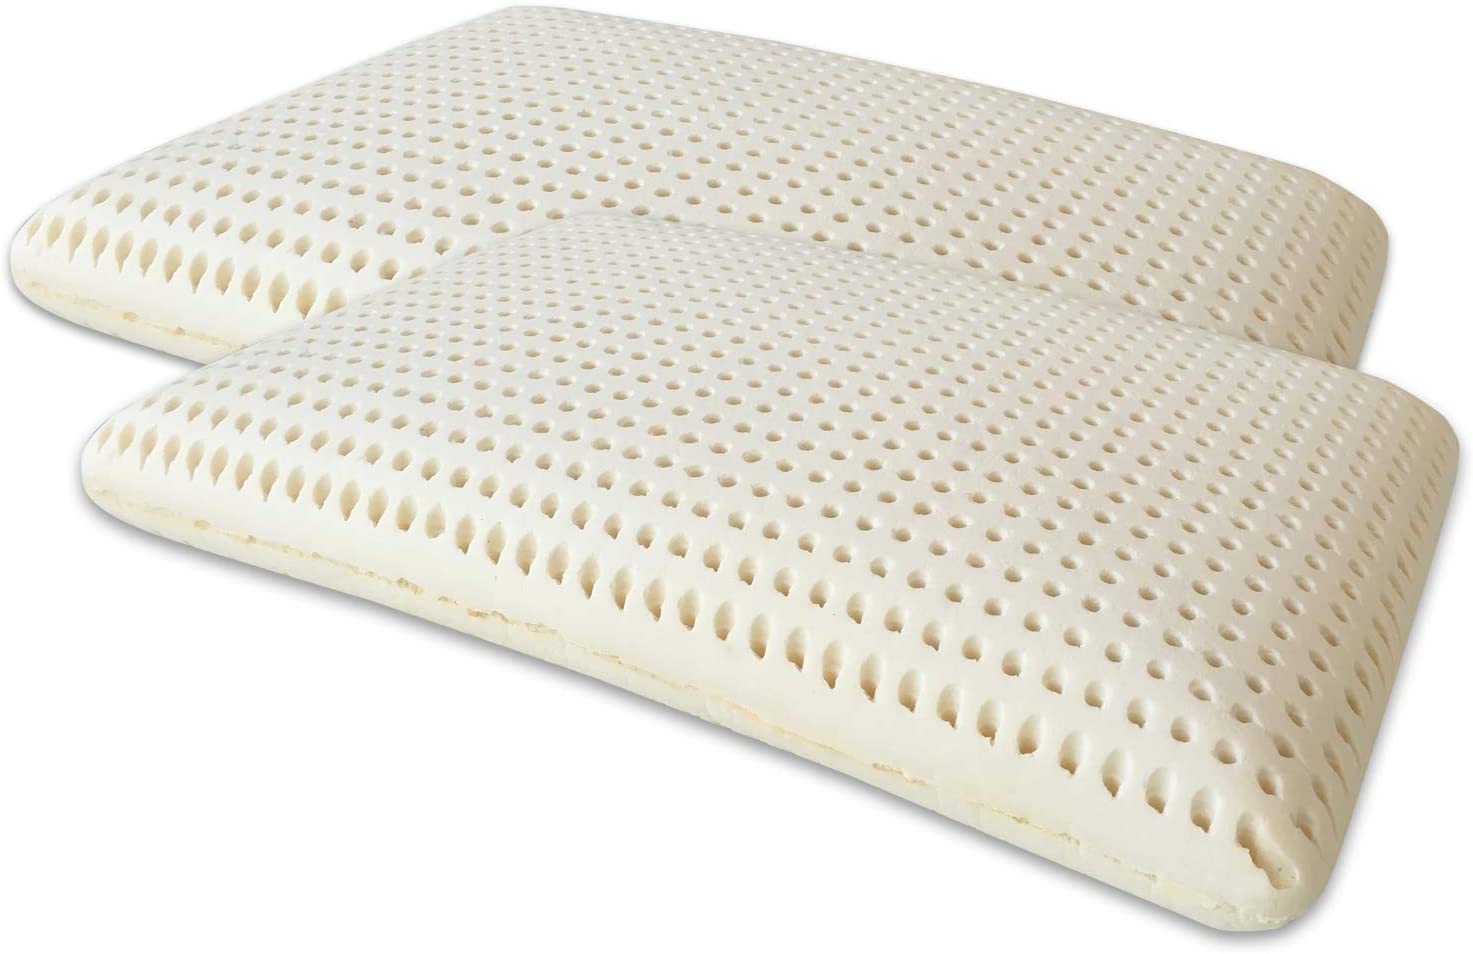 Marcapiuma latex pillow